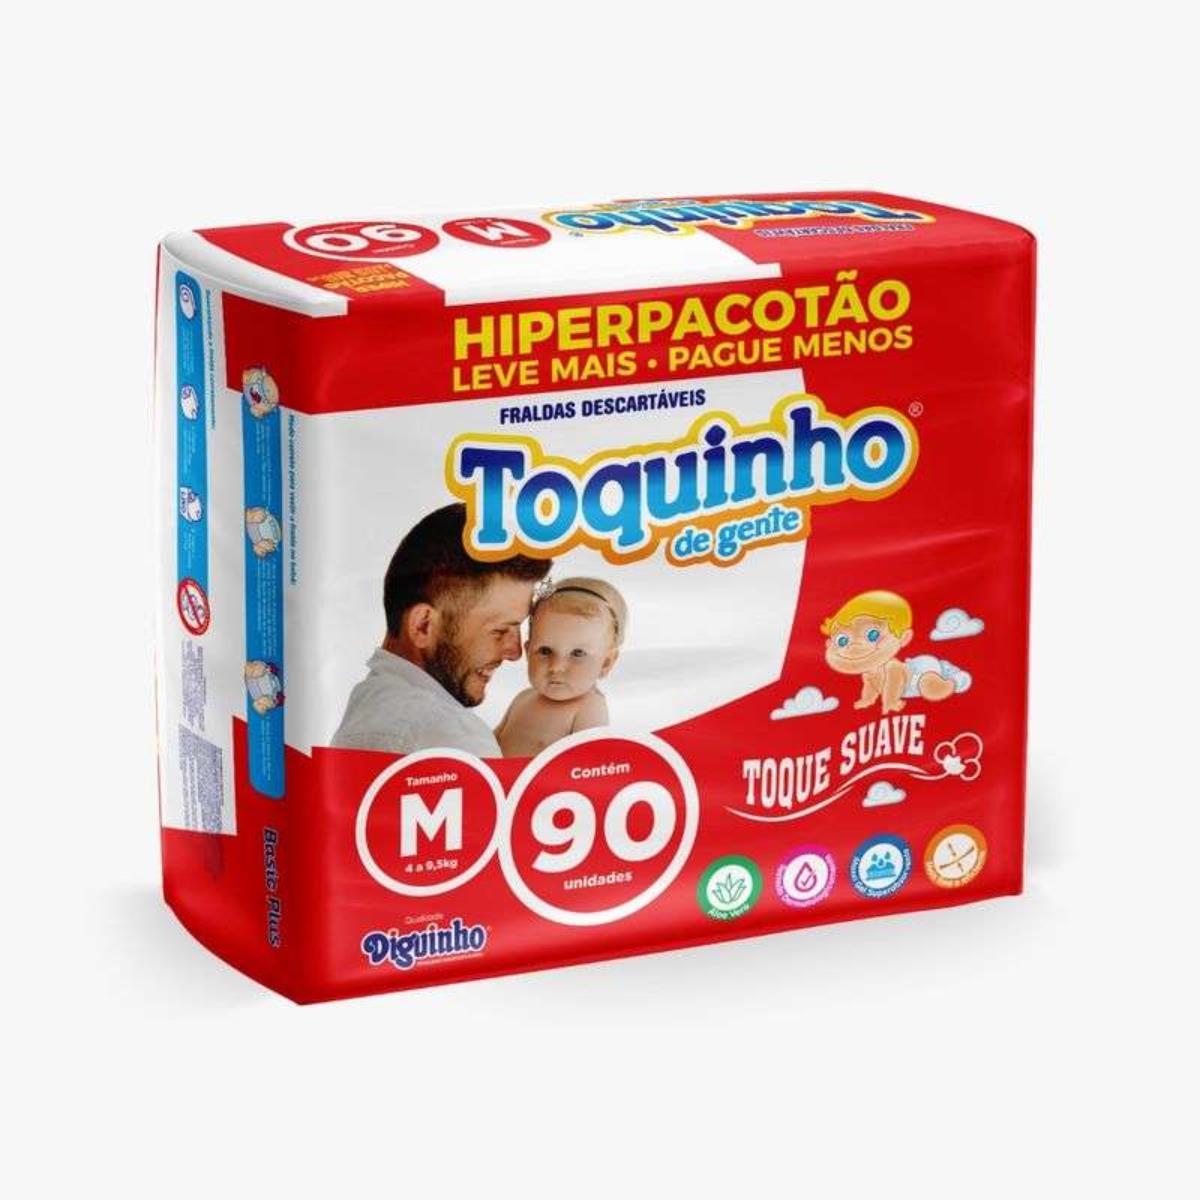 TOQUINHO FRALDA HIPERPACOTAO TAMANHO M COM 90 UNIDADES